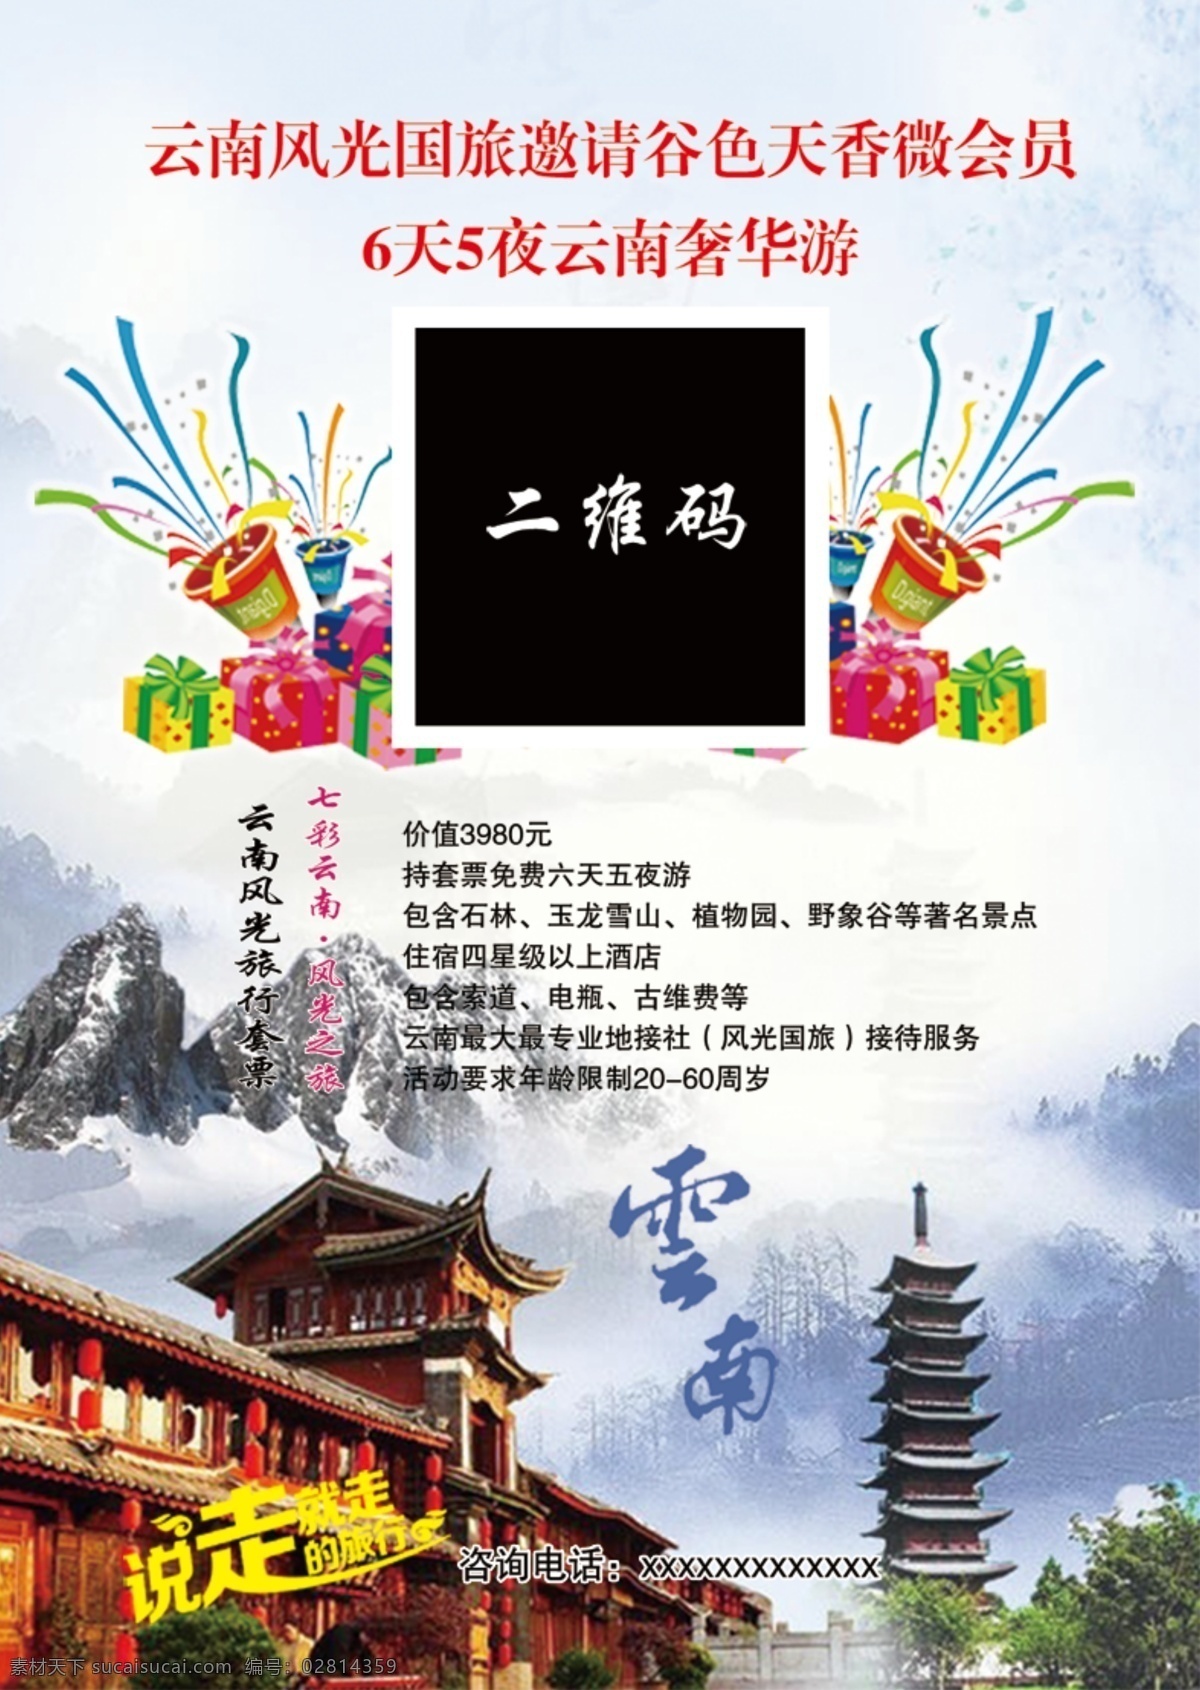 云南 旅行社 海报 旅游 云南海报 原创设计 原创海报